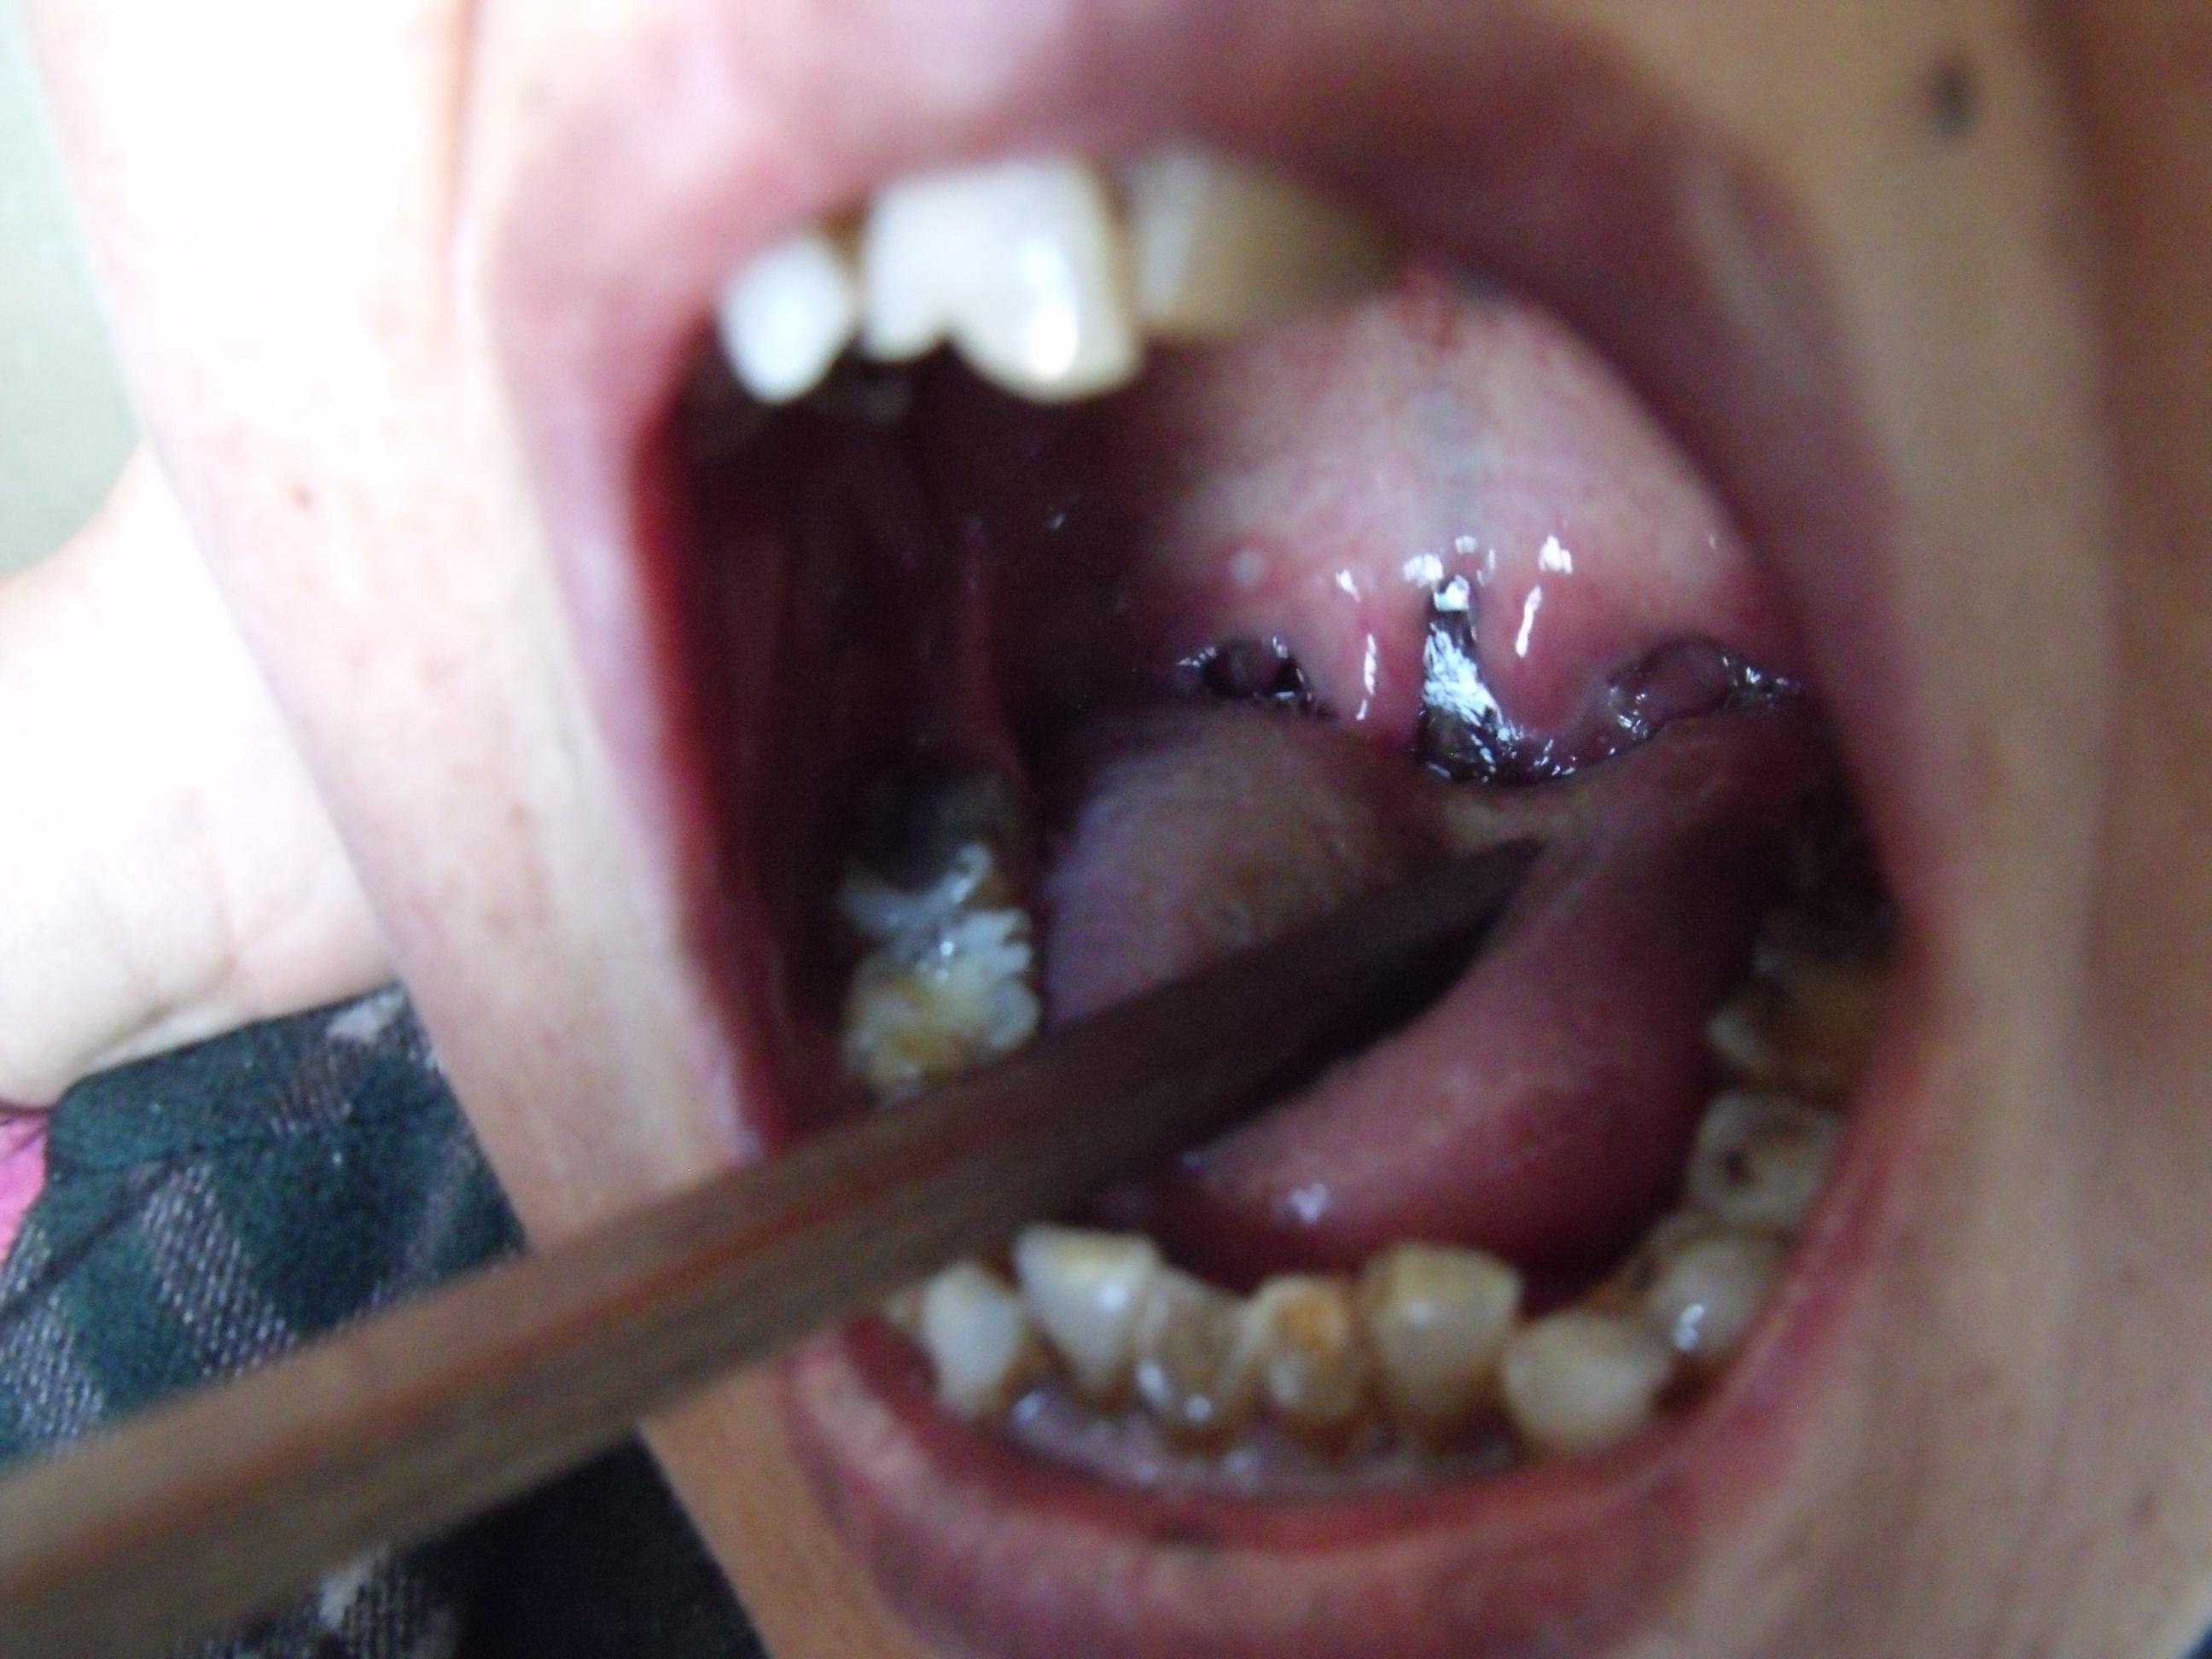 喉咙腭垂肿大图片